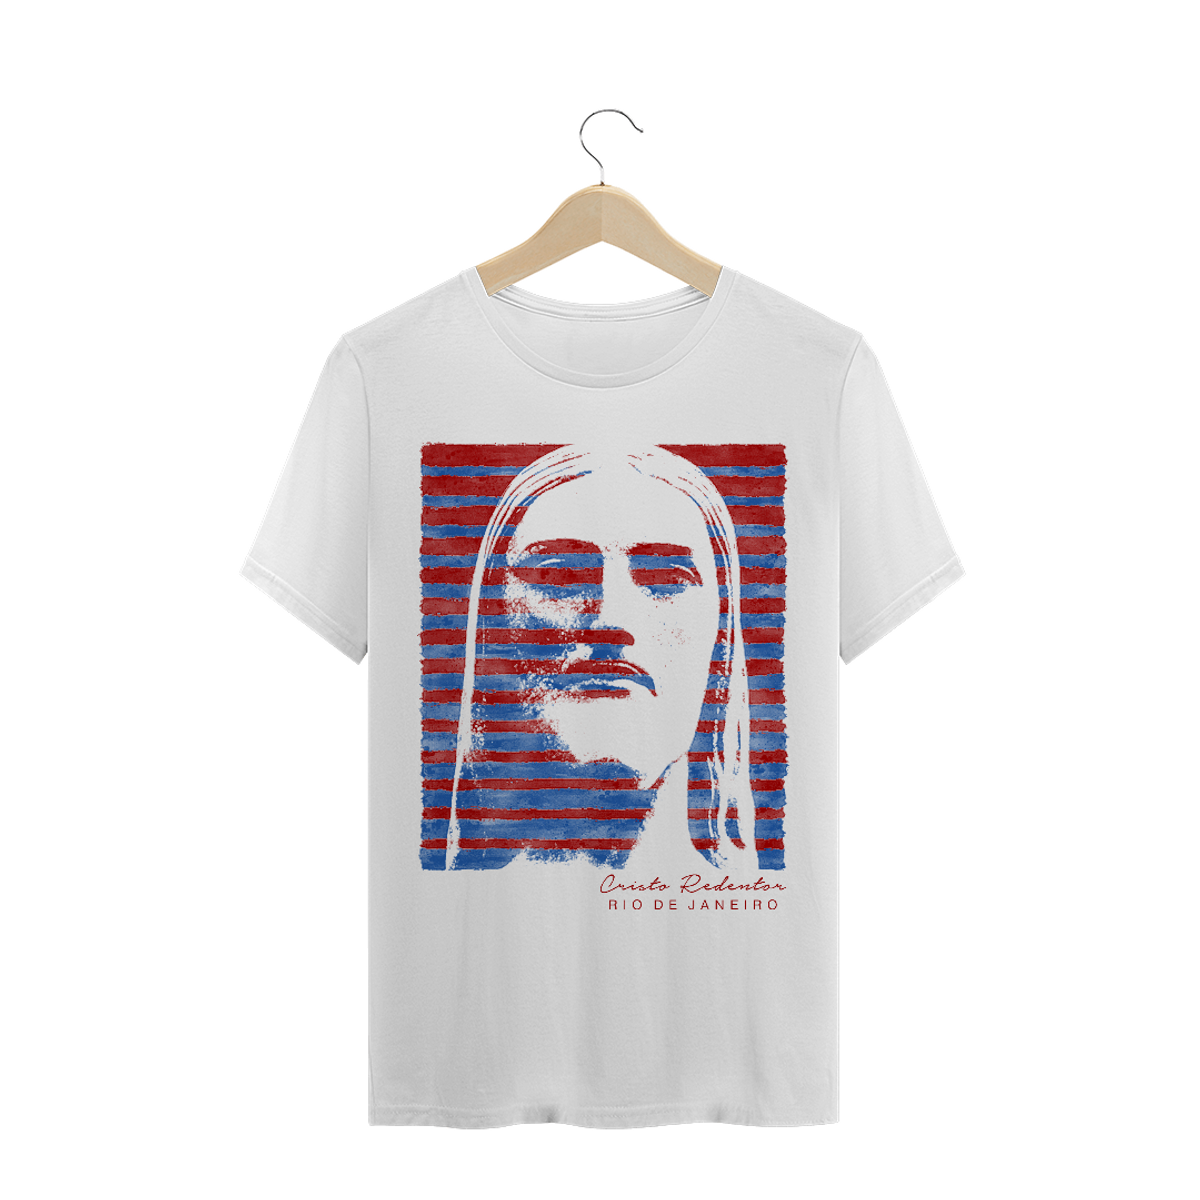 Nome do produto: Camiseta Masculina Cristo Redentor azul e vermelho